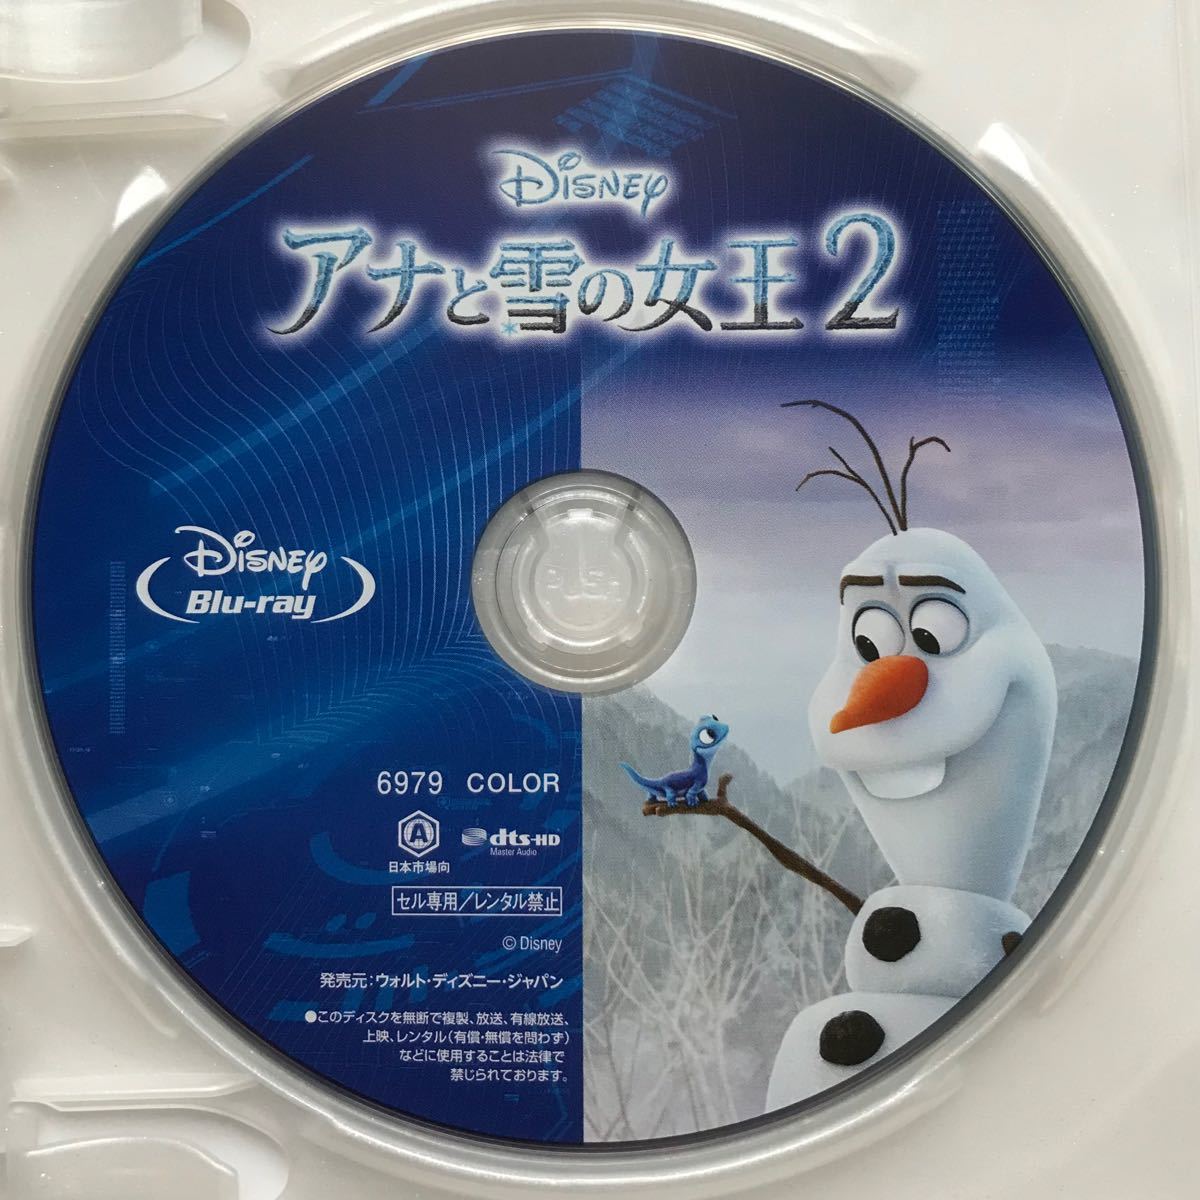 アナと雪の女王2 ブルーレイ 純正ケース、マジックコード付き MovieNEX Blu-ray 新品未再生